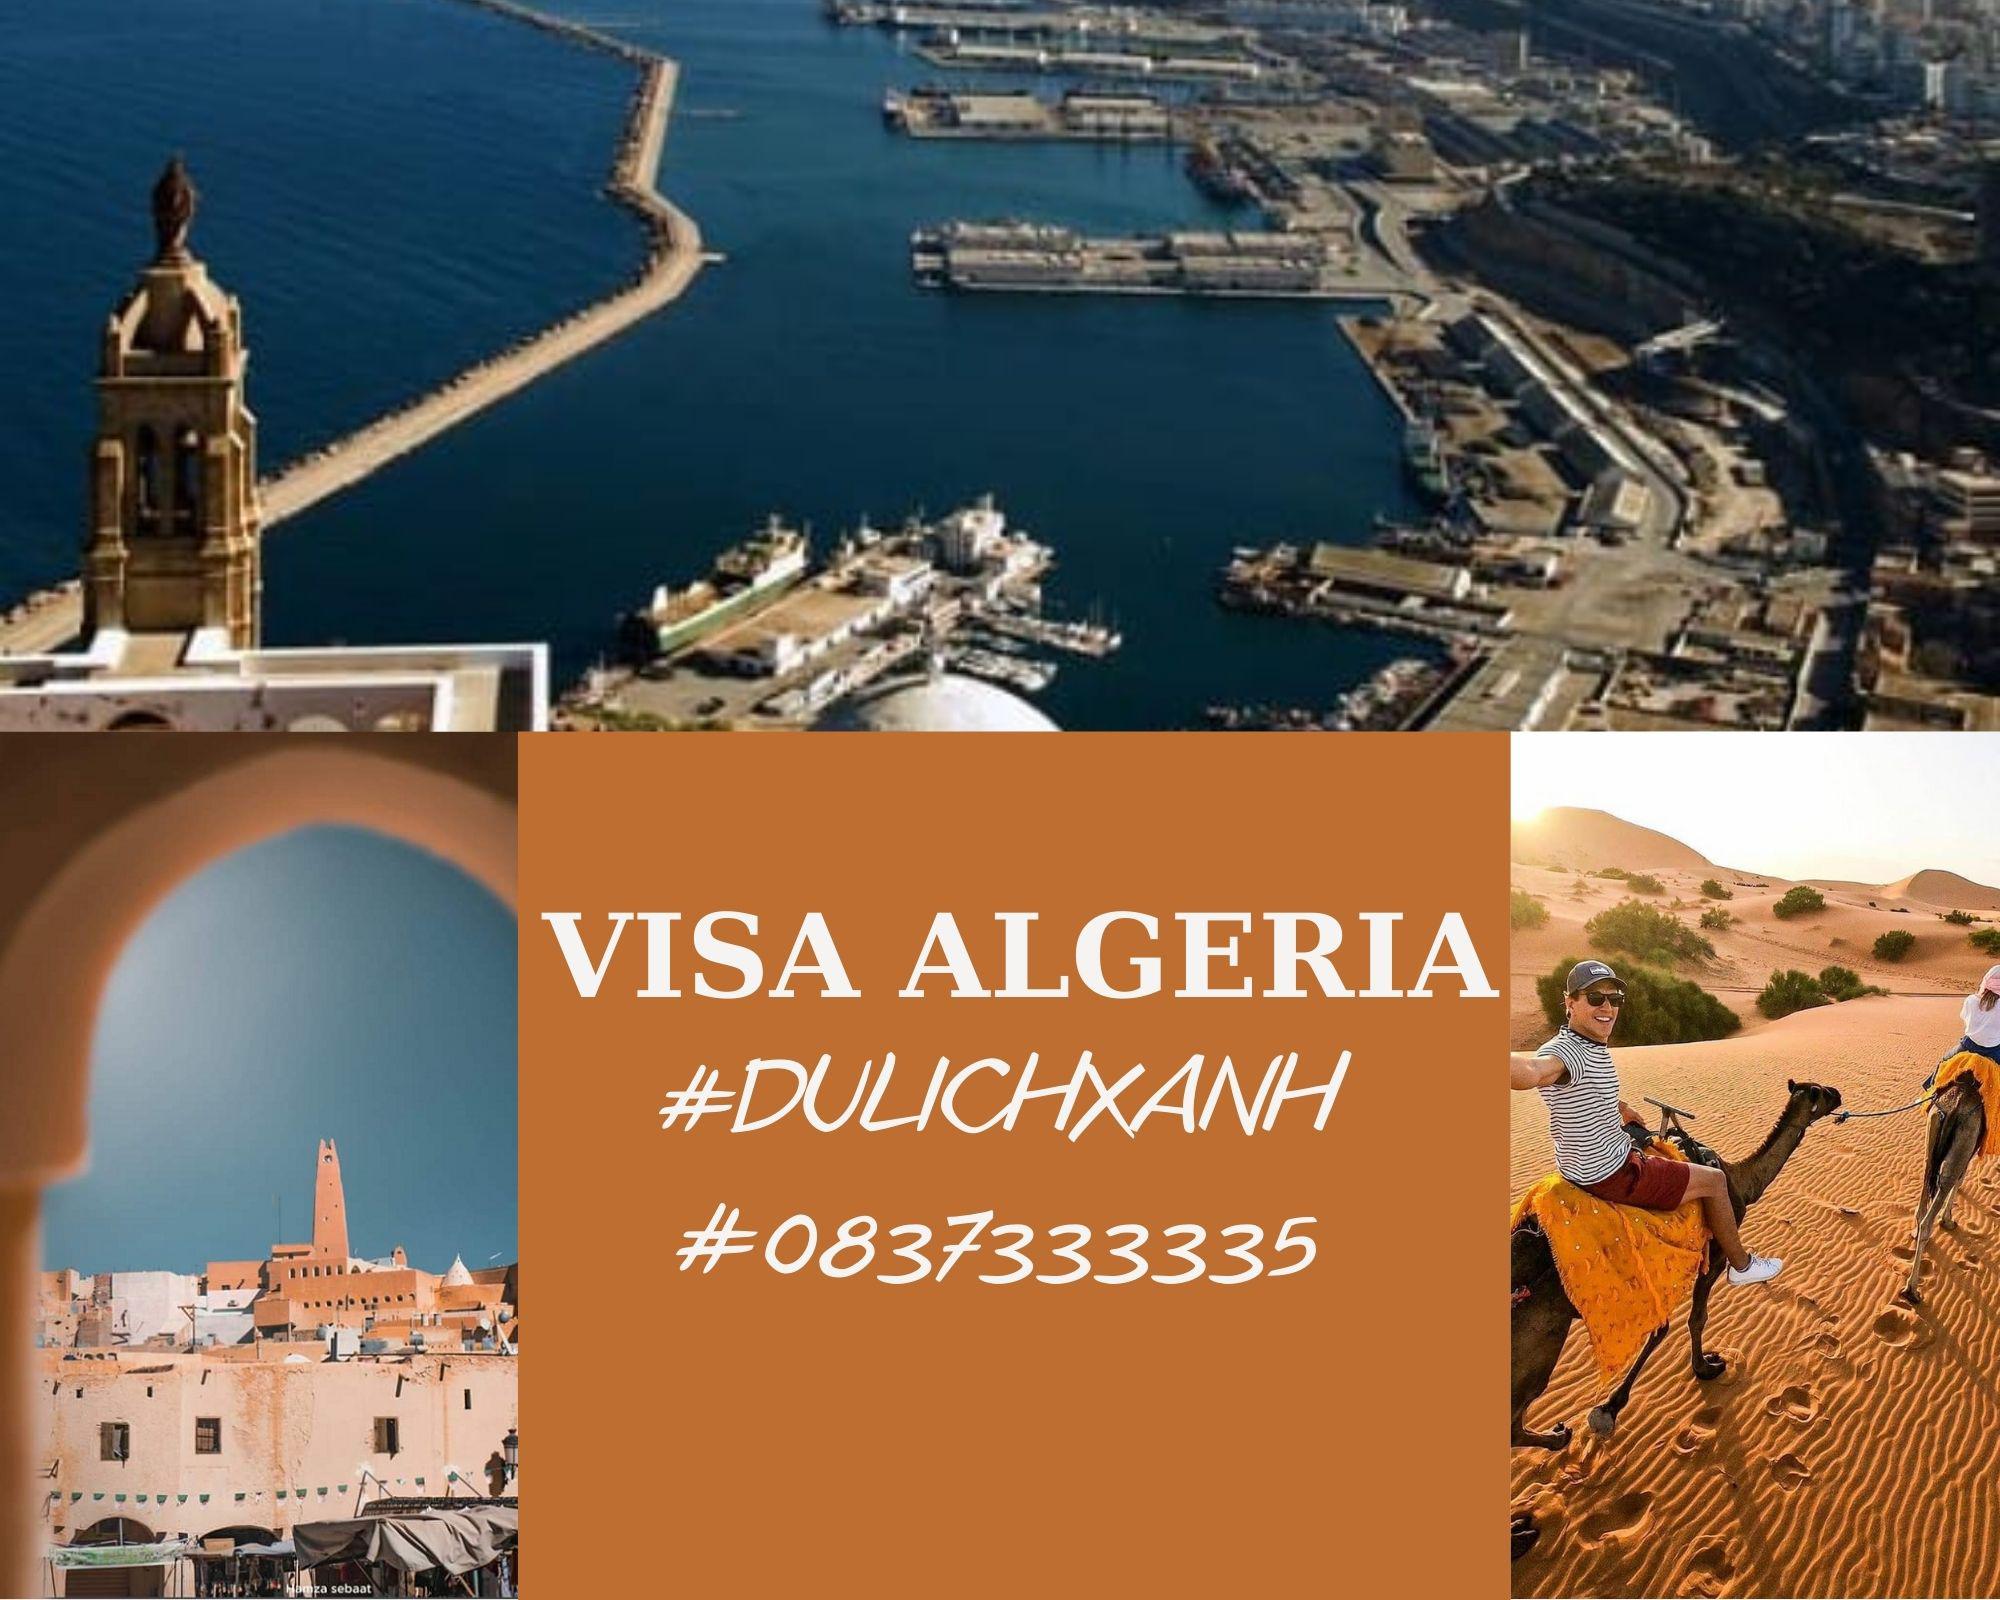 Kinh nghiệm xin visa Algeria nhanh chóng, giá rẻ